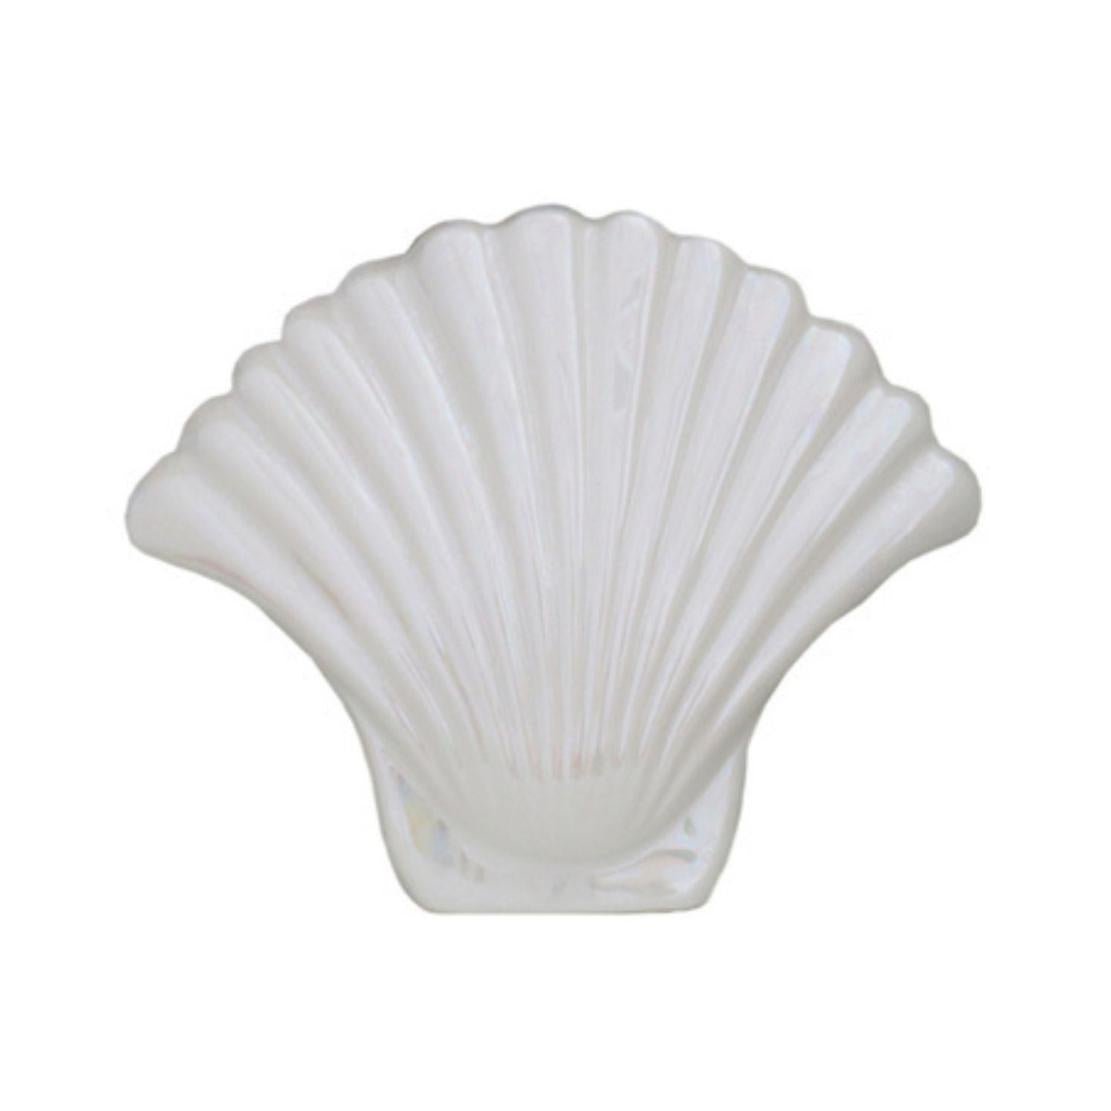 White, ceramic shell design vase